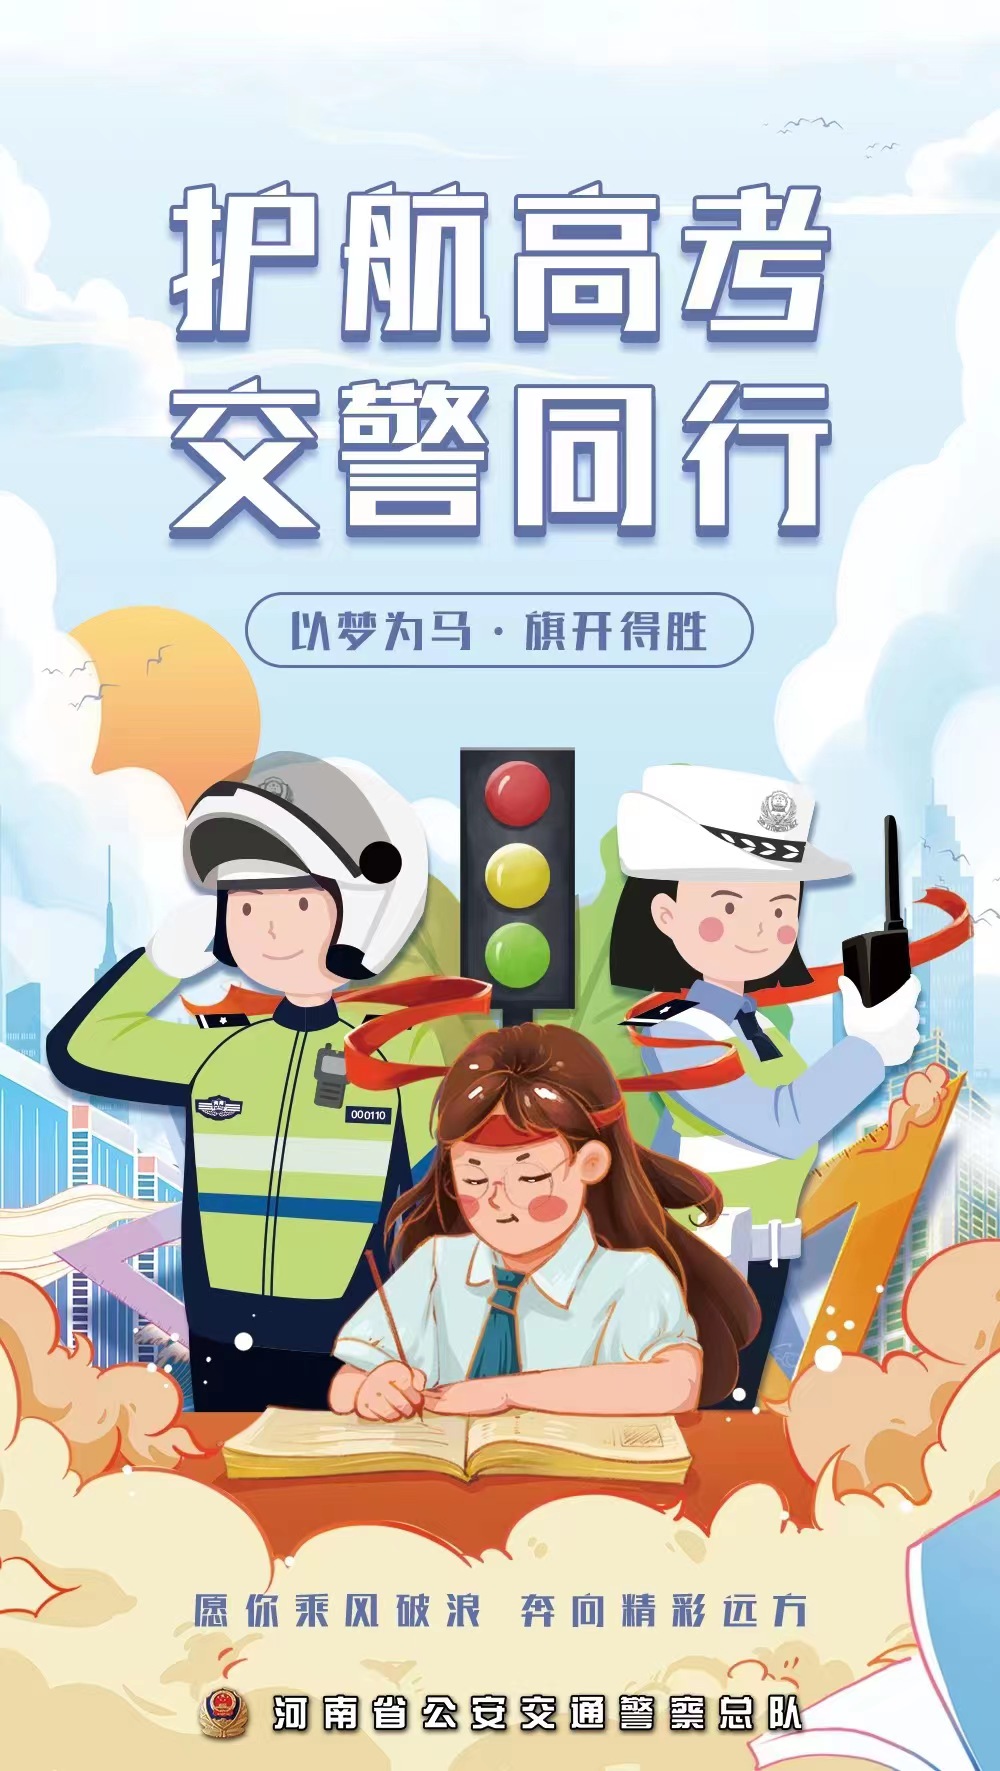 河南交警发出倡议 高考期间尽量采用公共交通工具出行